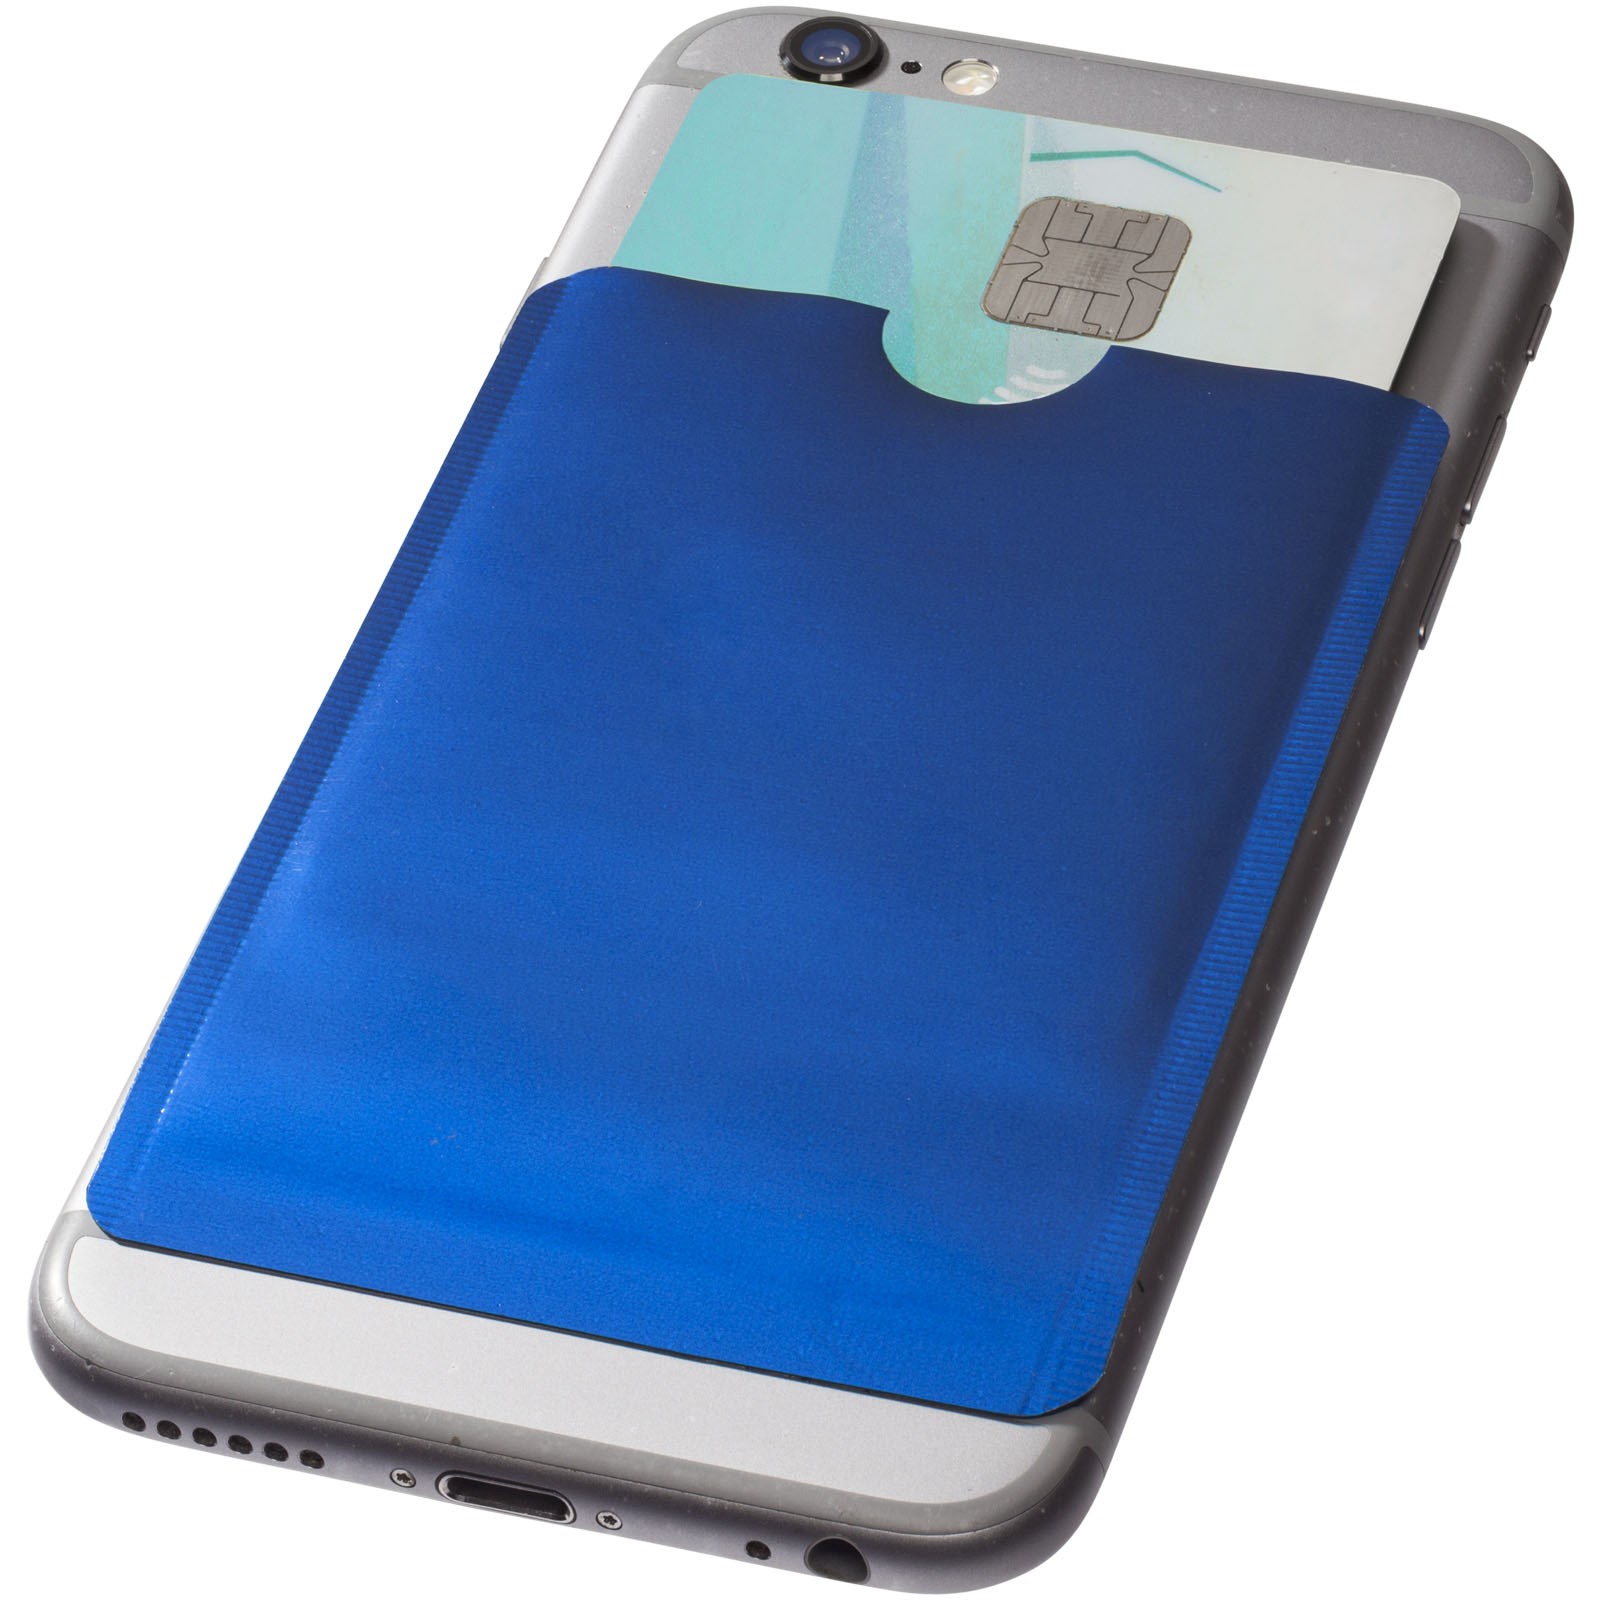 Pouzdro na karty RFID k chytrému telefonu - Světle modrá